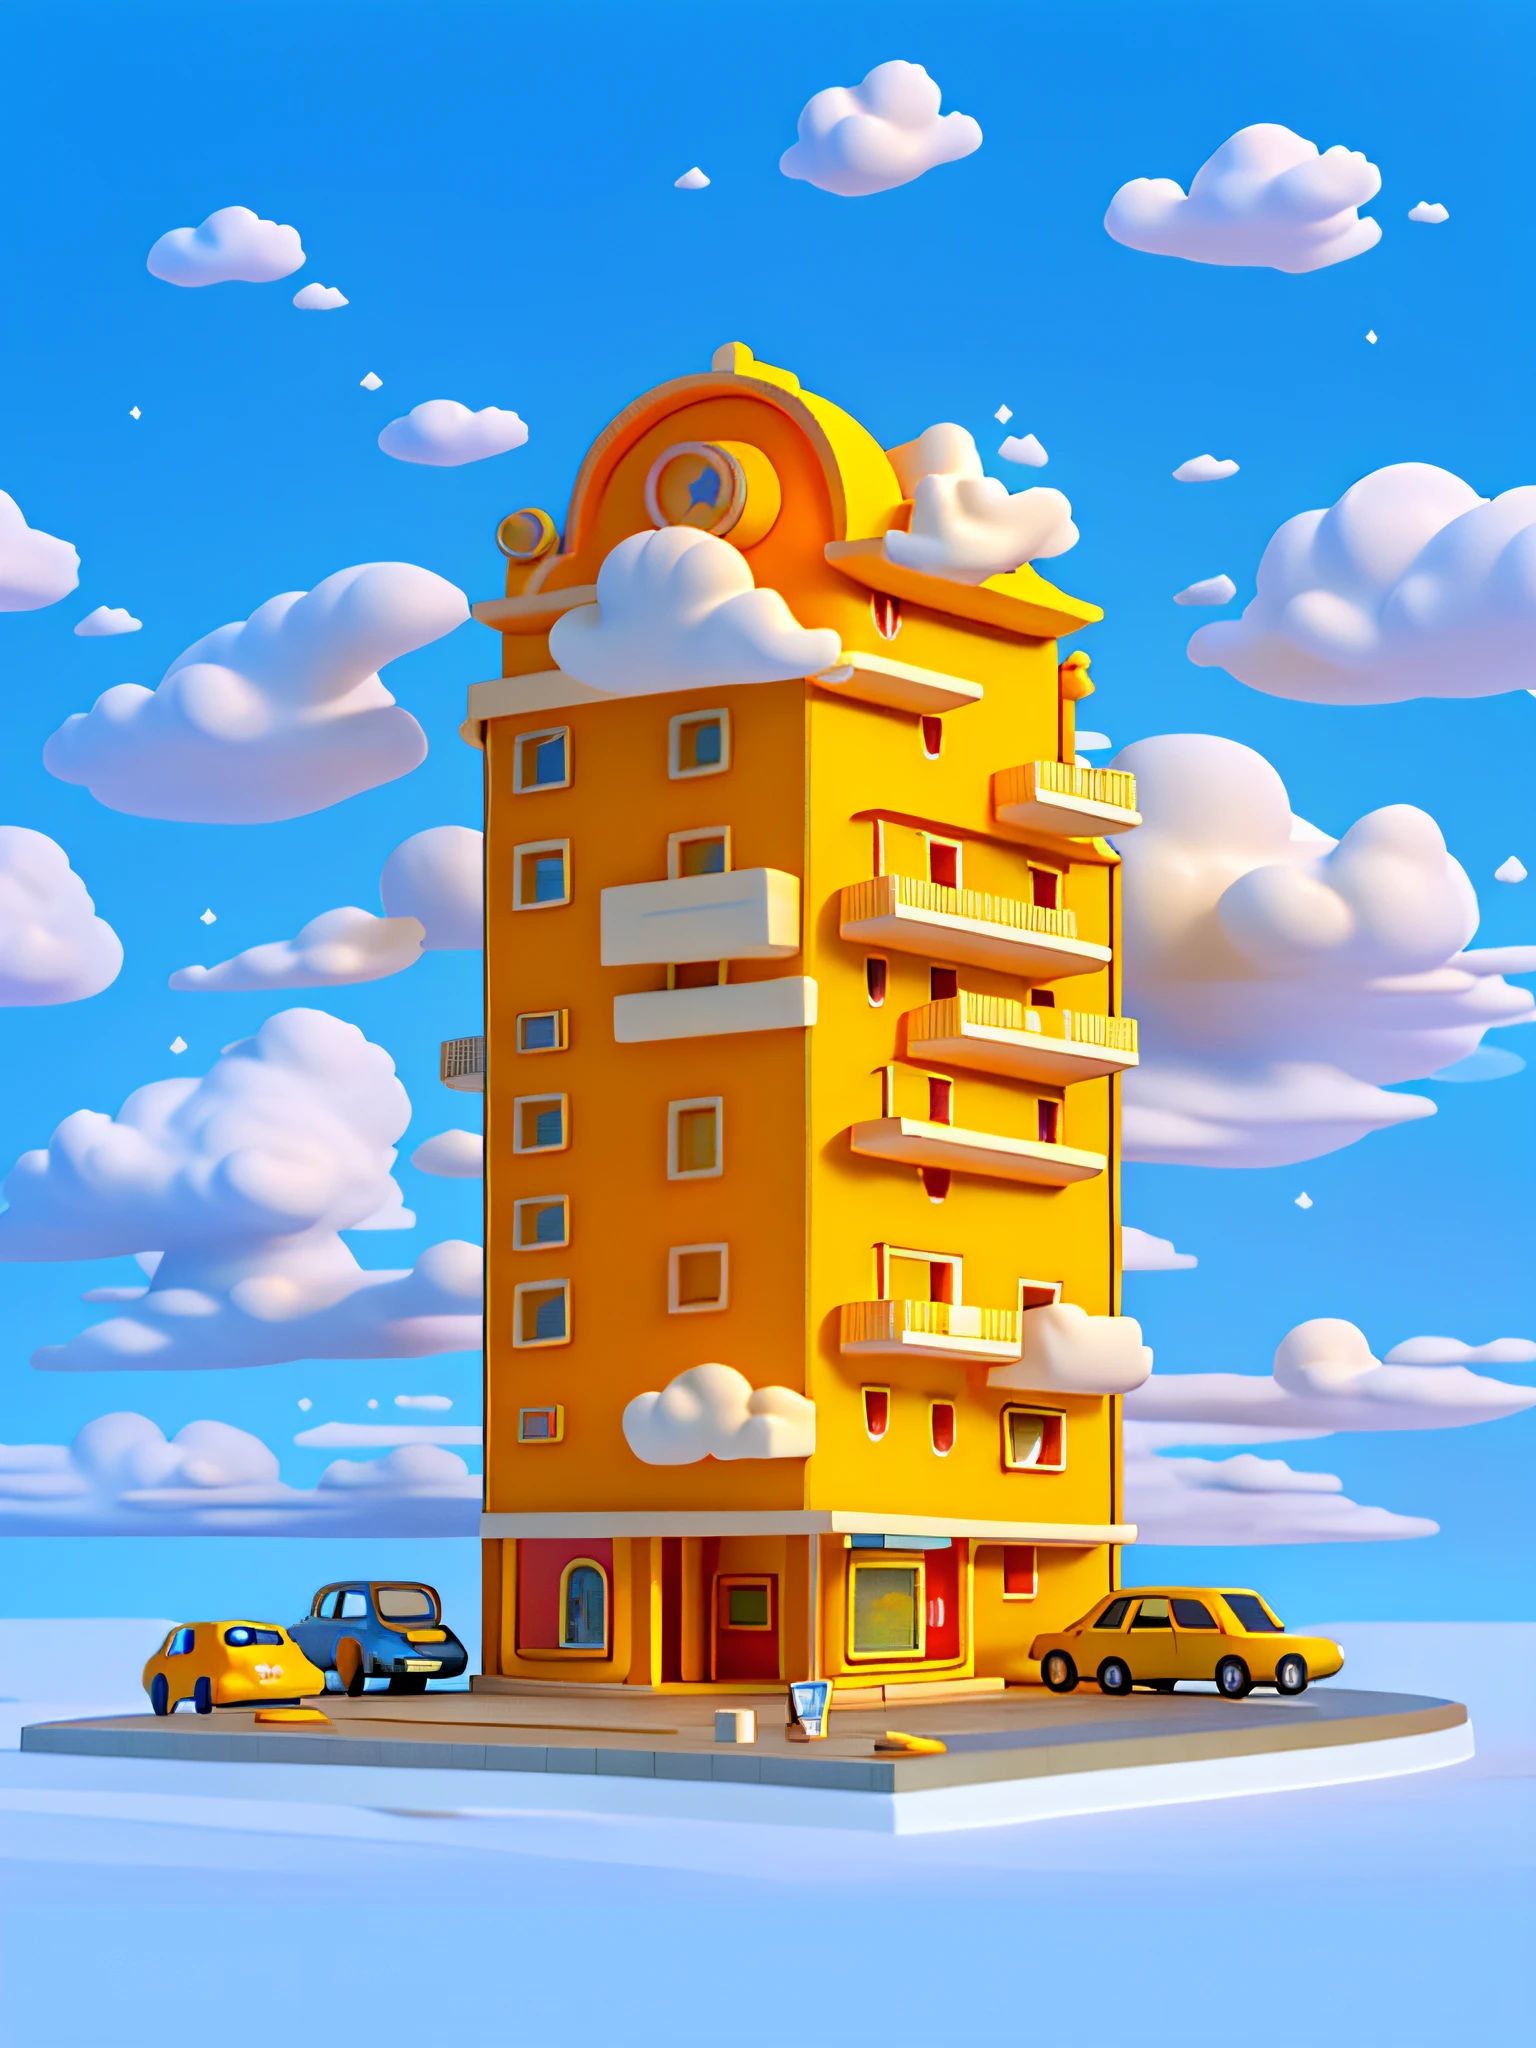 (تحفة), (أفضل جودة), (مفصلة للغاية) مبنى فندق كارتون بسيط, مبنى الفندق منخفض الارتفاع, نموذج لعبة, سحاب, سيارات, عرض أعلى, خلفية نظيفة, المباني الصفراء الشاحبة والبرتقالية الشاحبة,